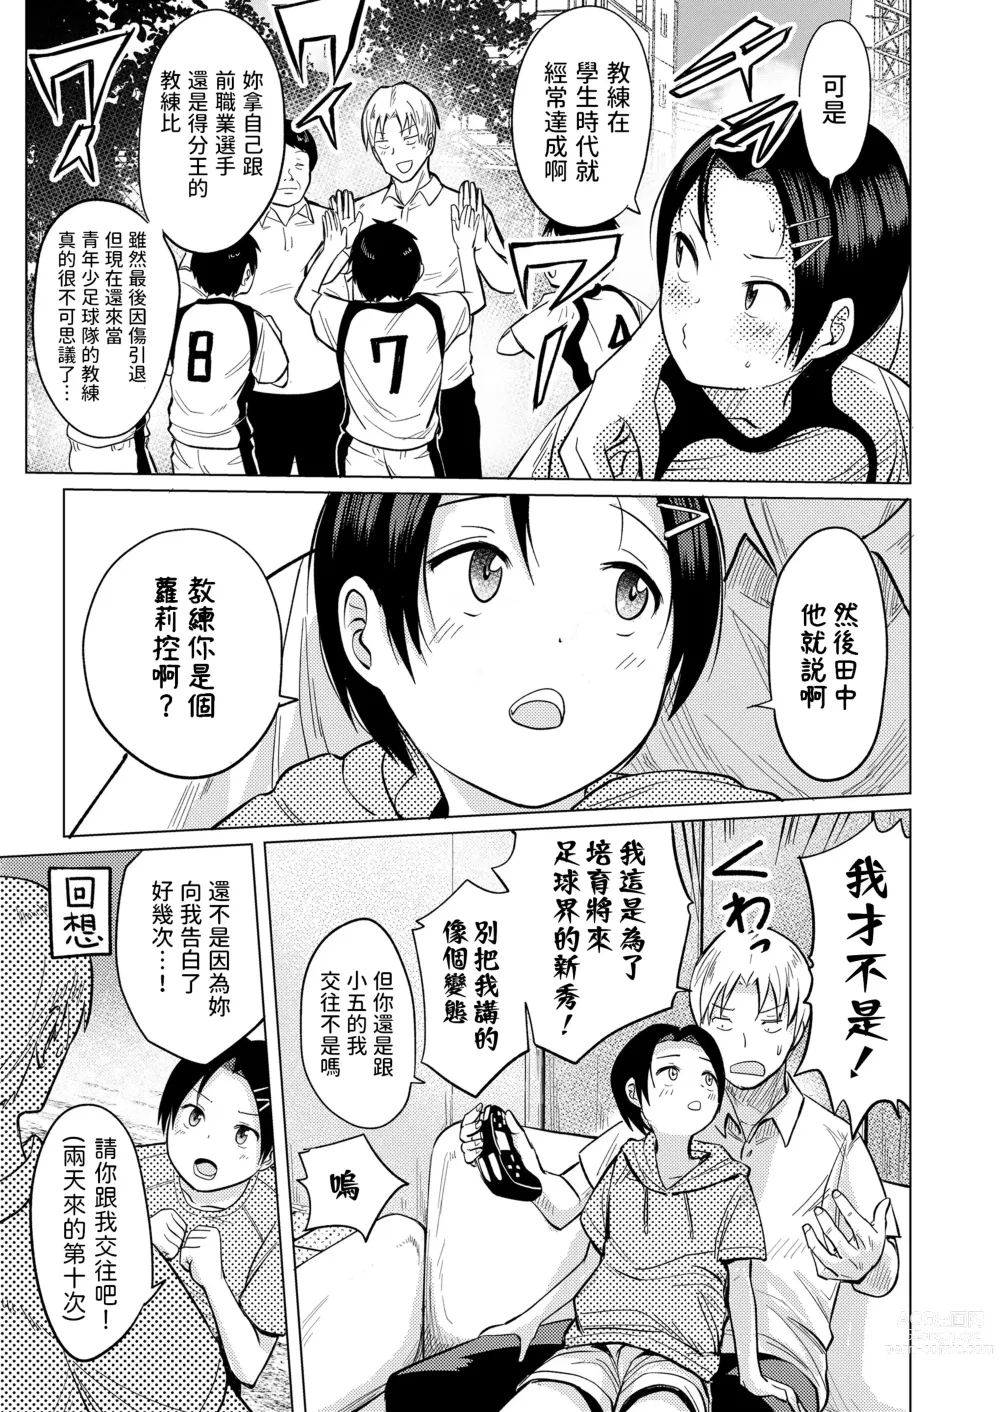 Page 3 of manga Hat Trick